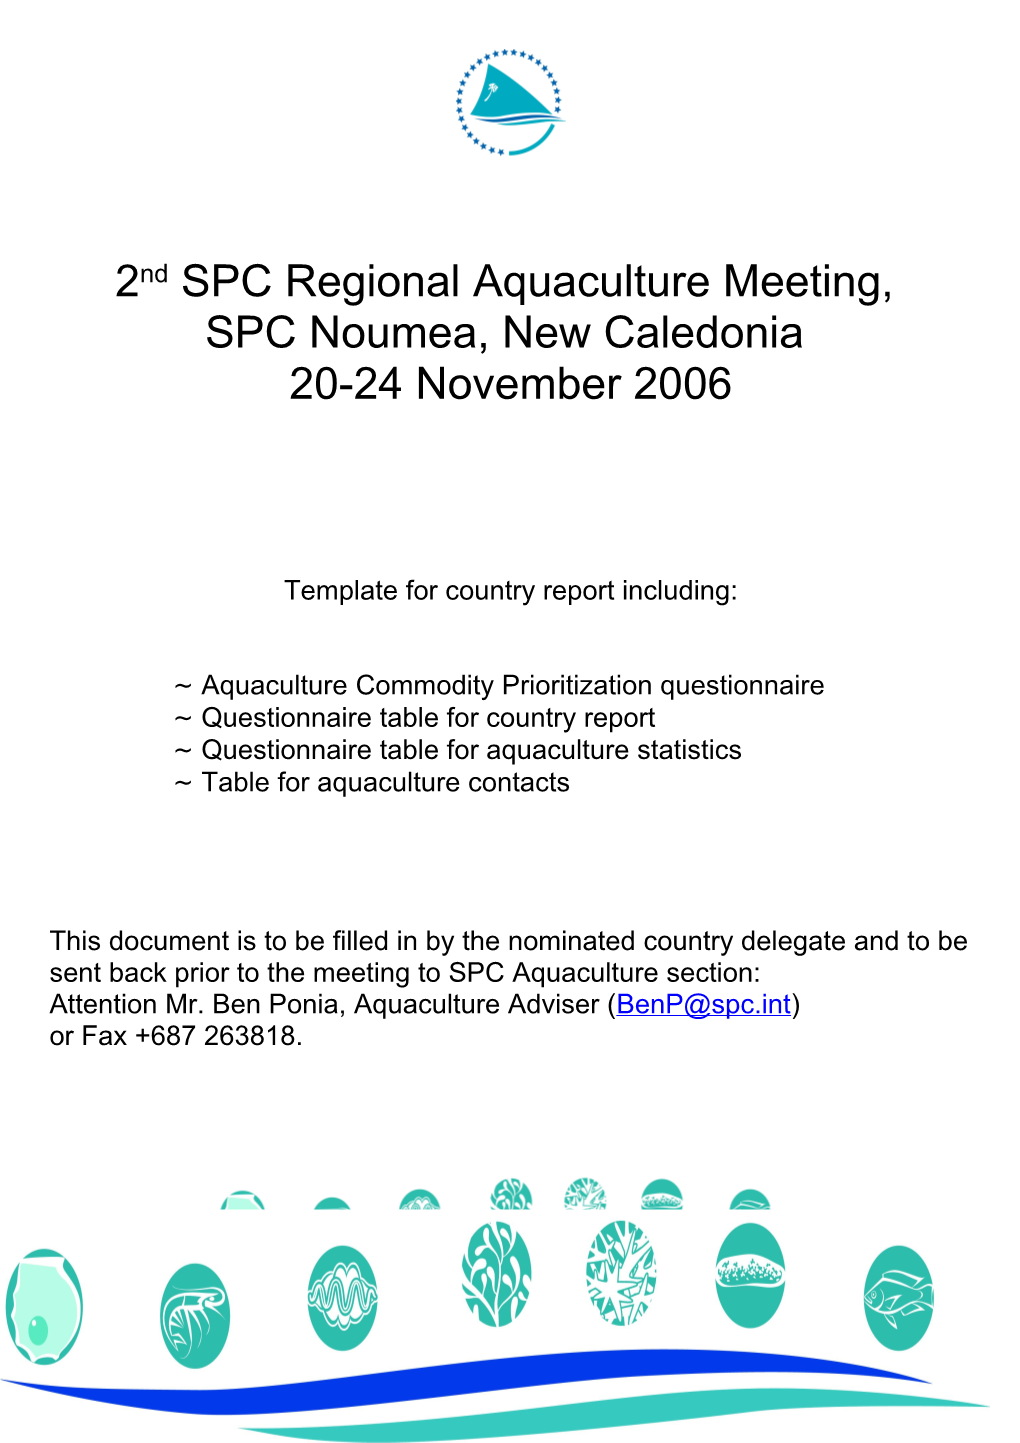 Aquaculture Commodity Prioritisation Questionnaire